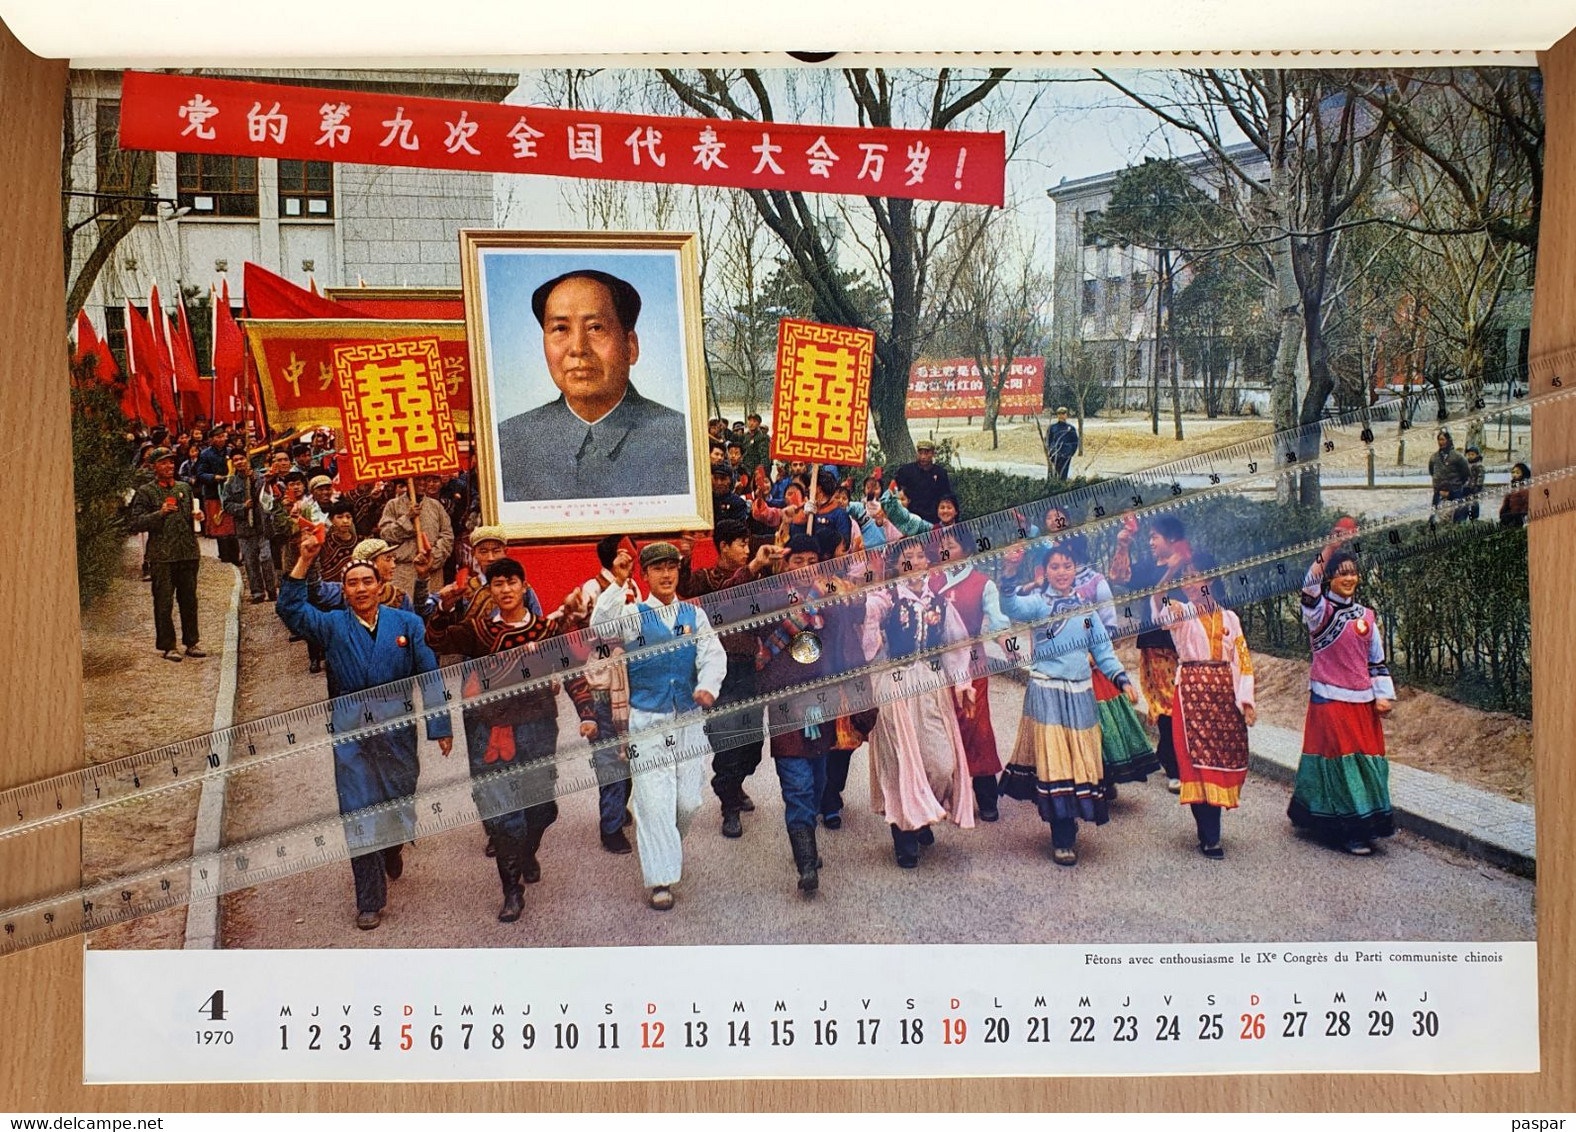 Calendrier de 1970 Chine - Propagande éditée par la Chine - Hommage de Guozi Shudian -, Mao Tsétoung